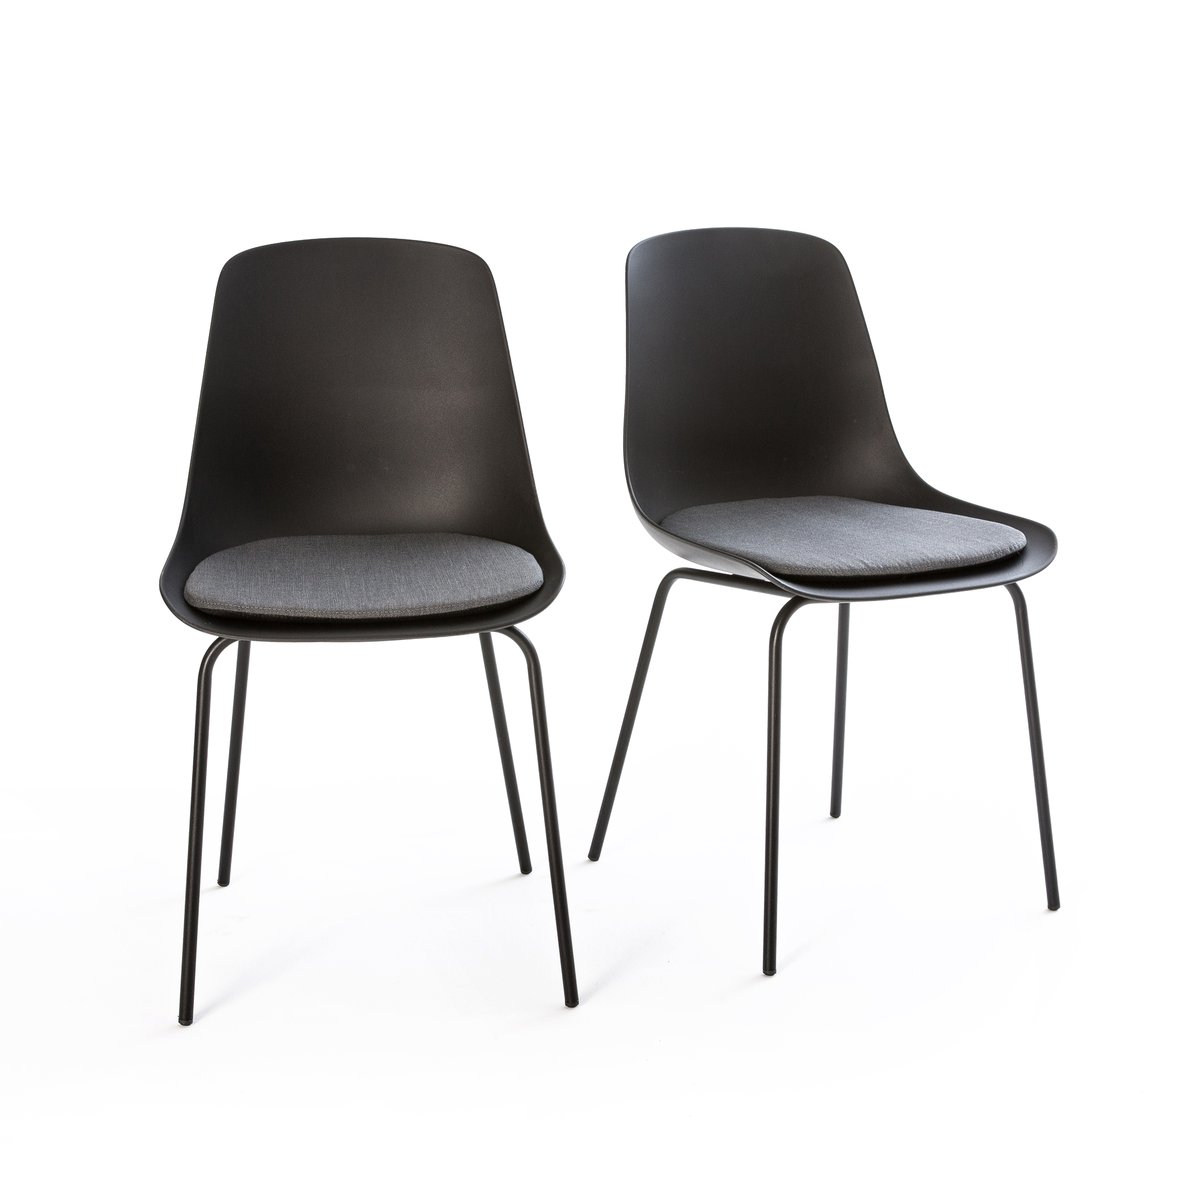 Комплект из 2 стульев, Menin La Redoute единый размер серый